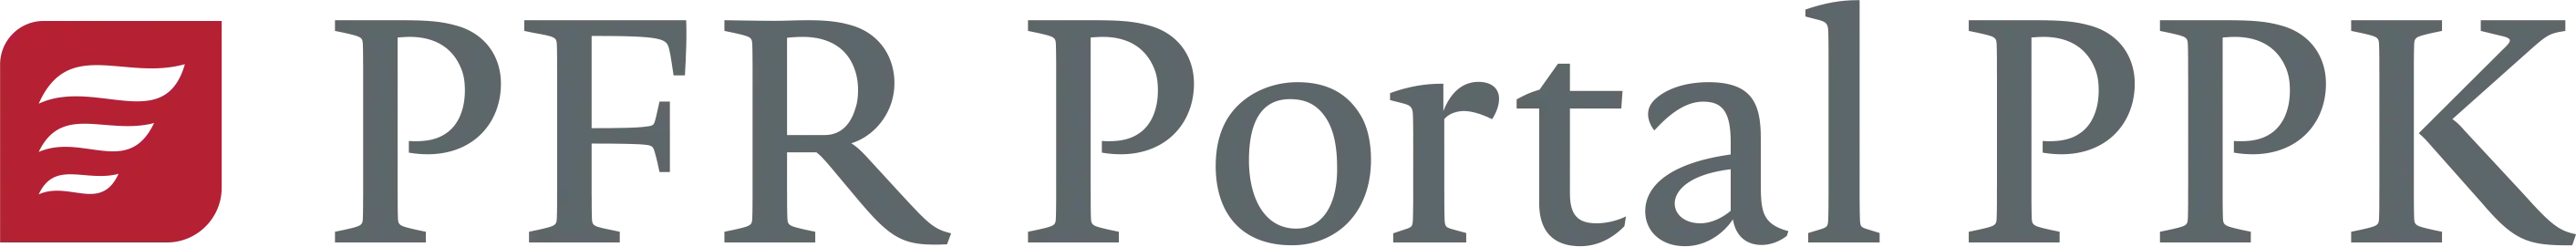 PFR Portal PPK logo